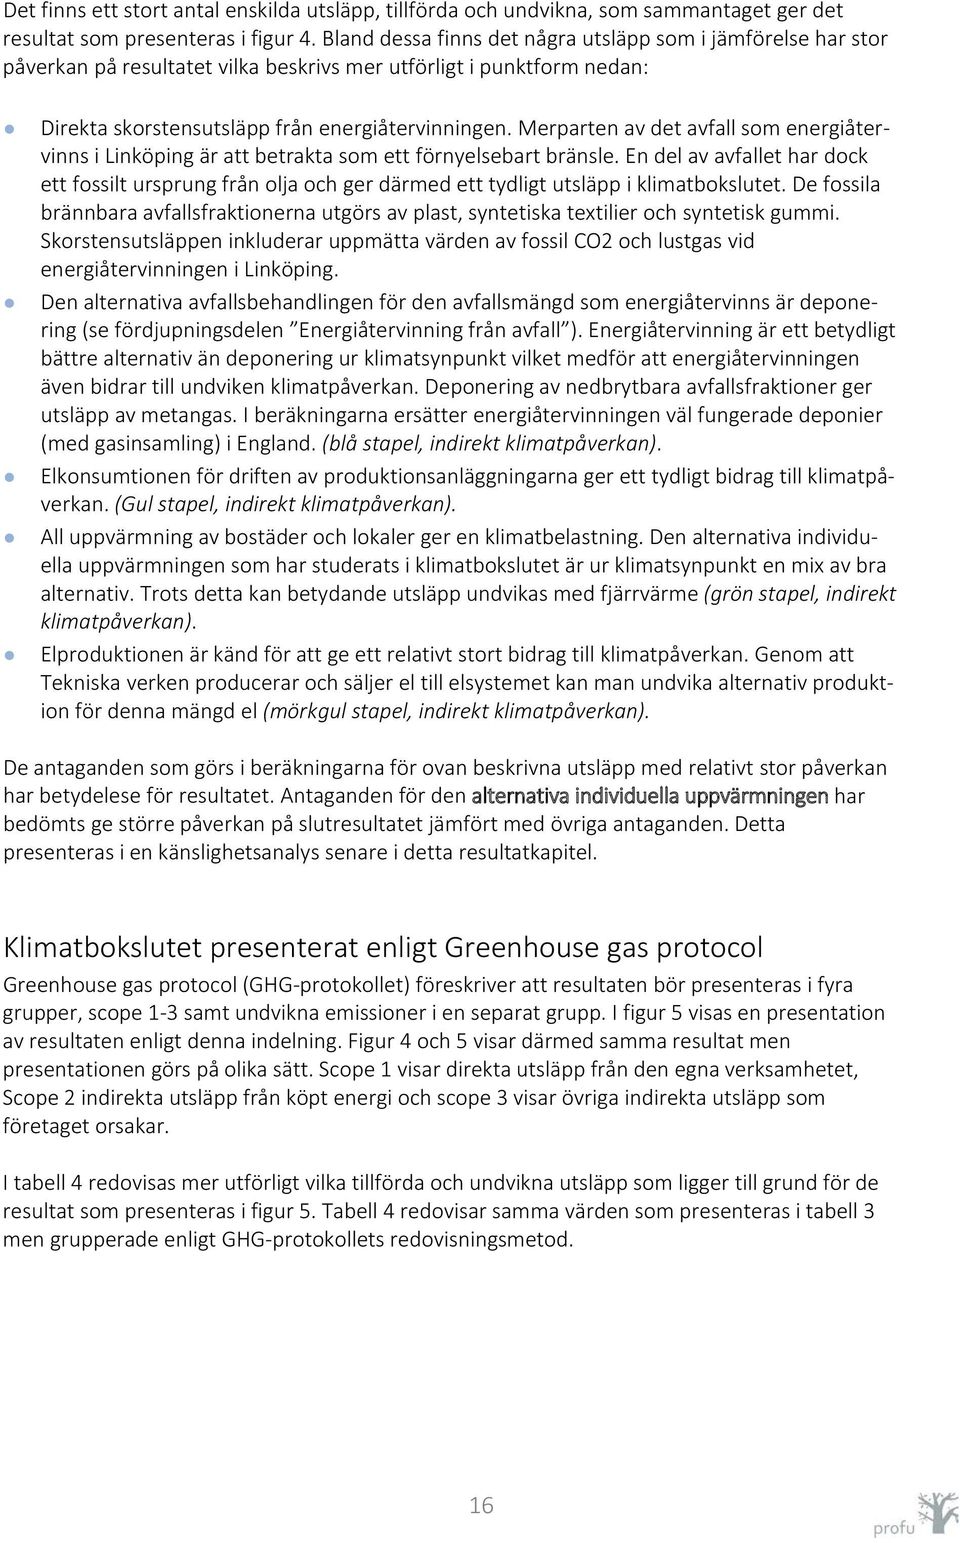 Merparten av det avfall som energiåtervinns i Linköping är att betrakta som ett förnyelsebart bränsle.